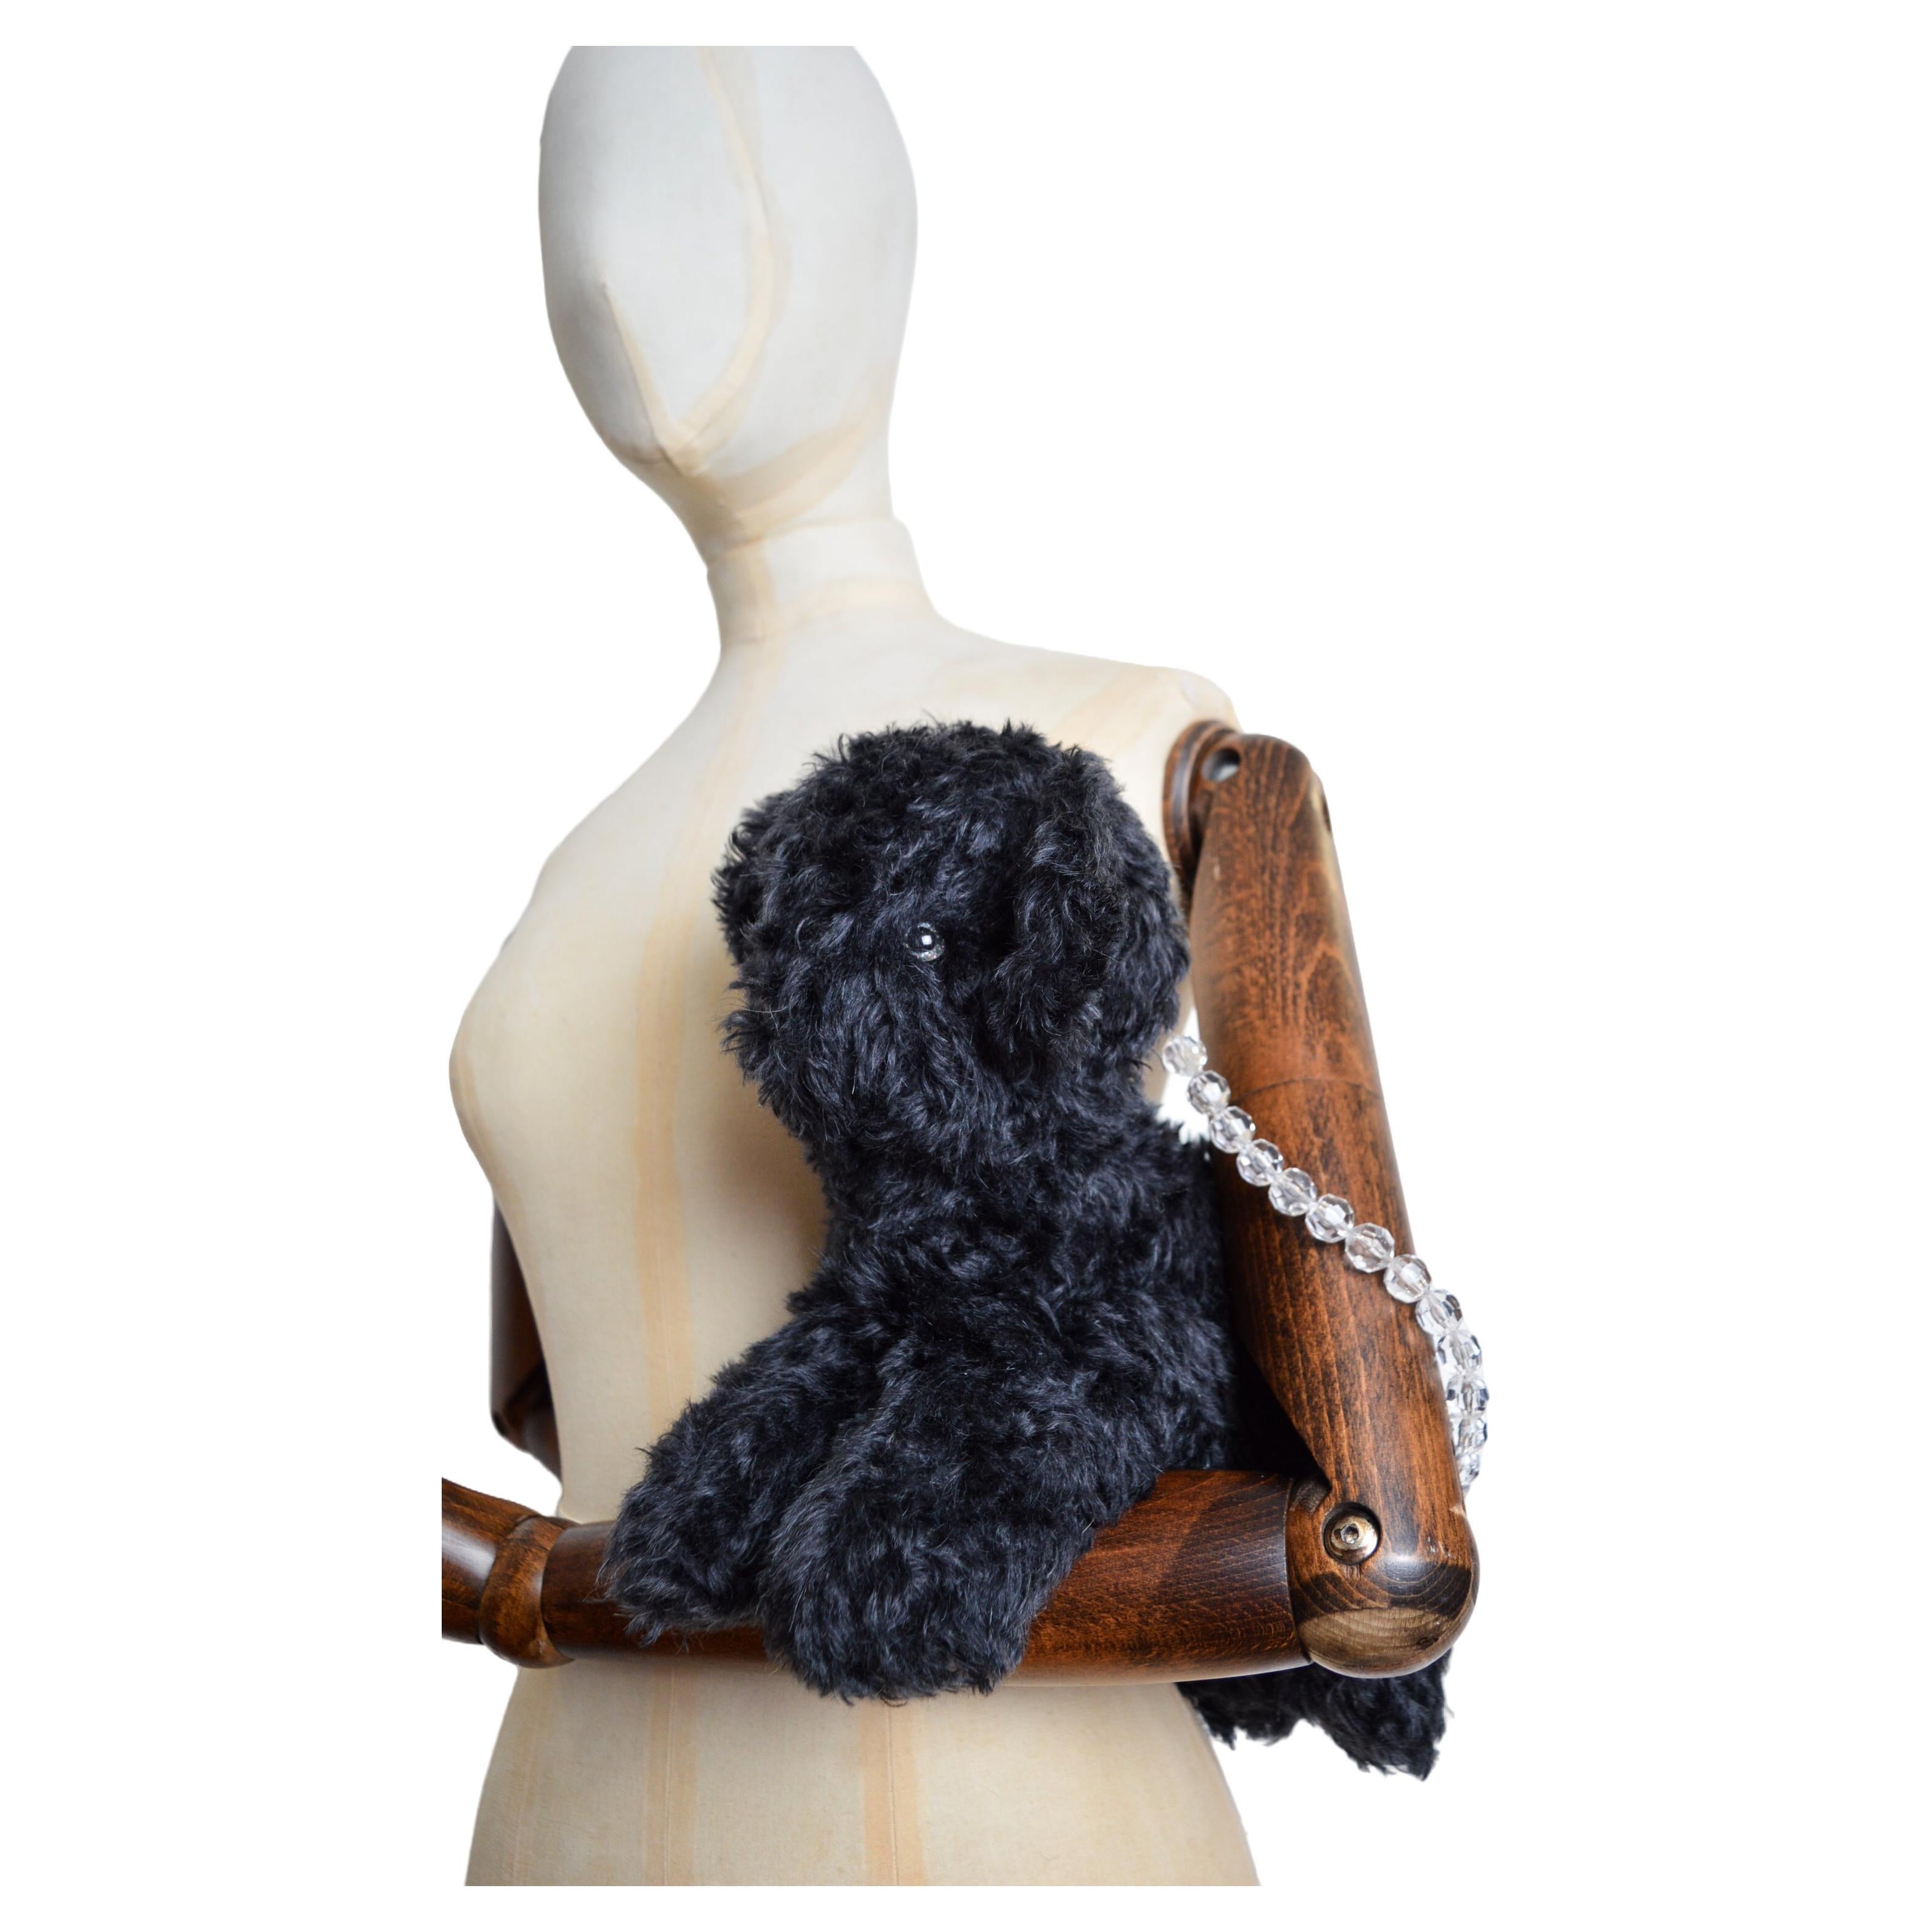 Die lustige Mohair-Tasche 'Claudia' in Form eines Teddybären von der britischen Designerin 'ASHLEY WILLIAMS'.

HERGESTELLT IN ENGLAND.  

Merkmale: Perlenbesetzte Griffe, biegsame Gliedmaßen und Schwanz, niedliche Glitzeraugen und -nase,